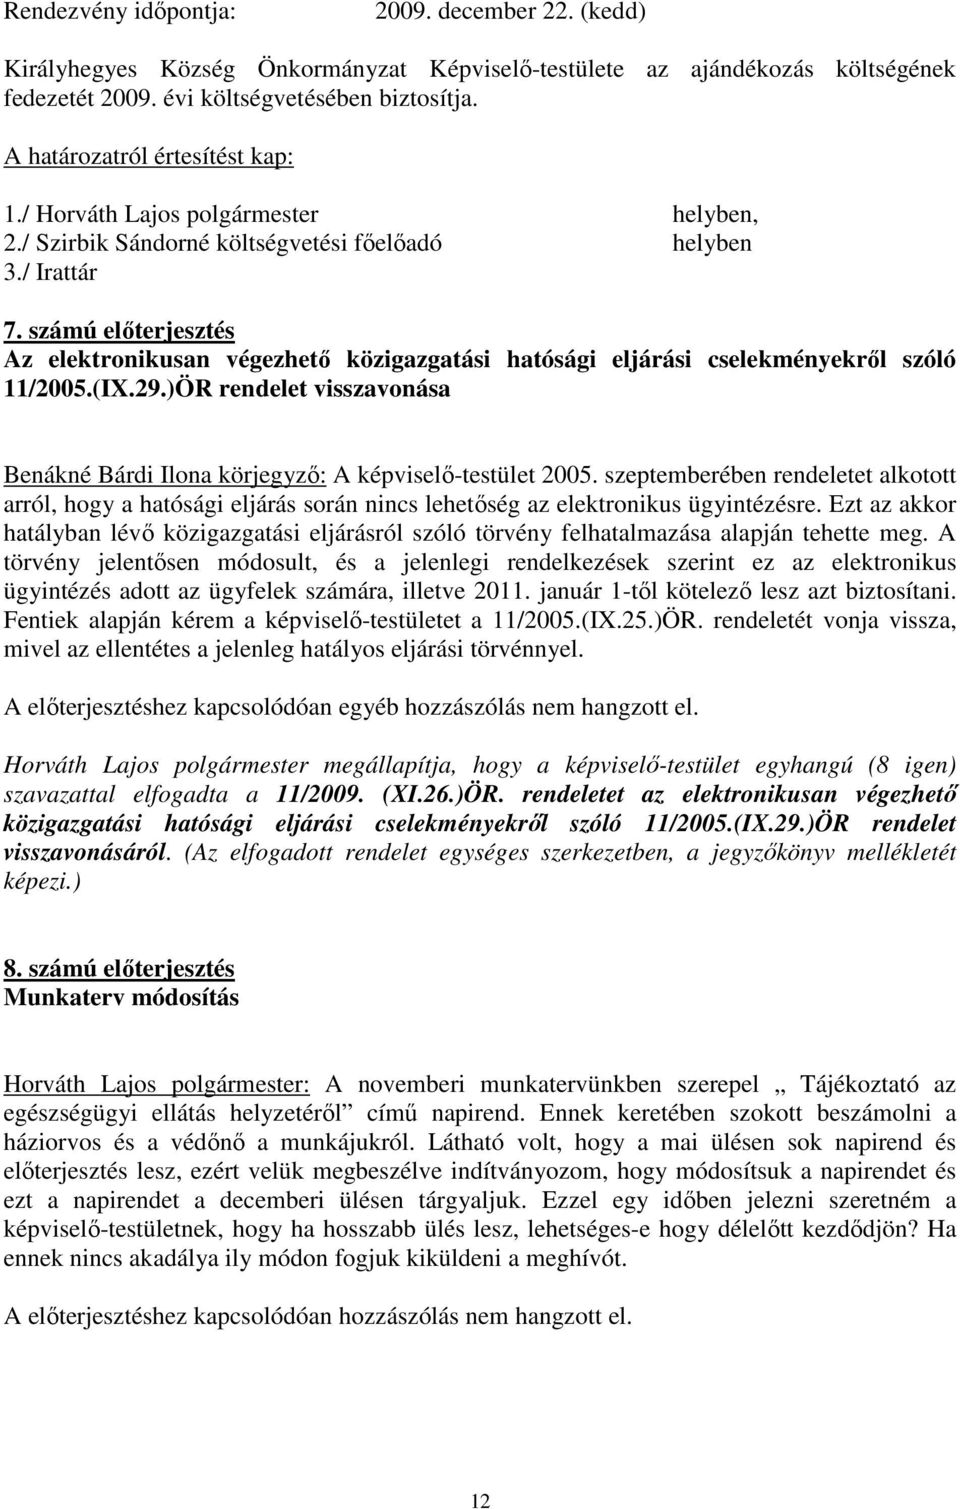 )ÖR rendelet visszavonása Benákné Bárdi Ilona körjegyzı: A -testület 2005. szeptemberében rendeletet alkotott arról, hogy a hatósági eljárás során nincs lehetıség az elektronikus ügyintézésre.